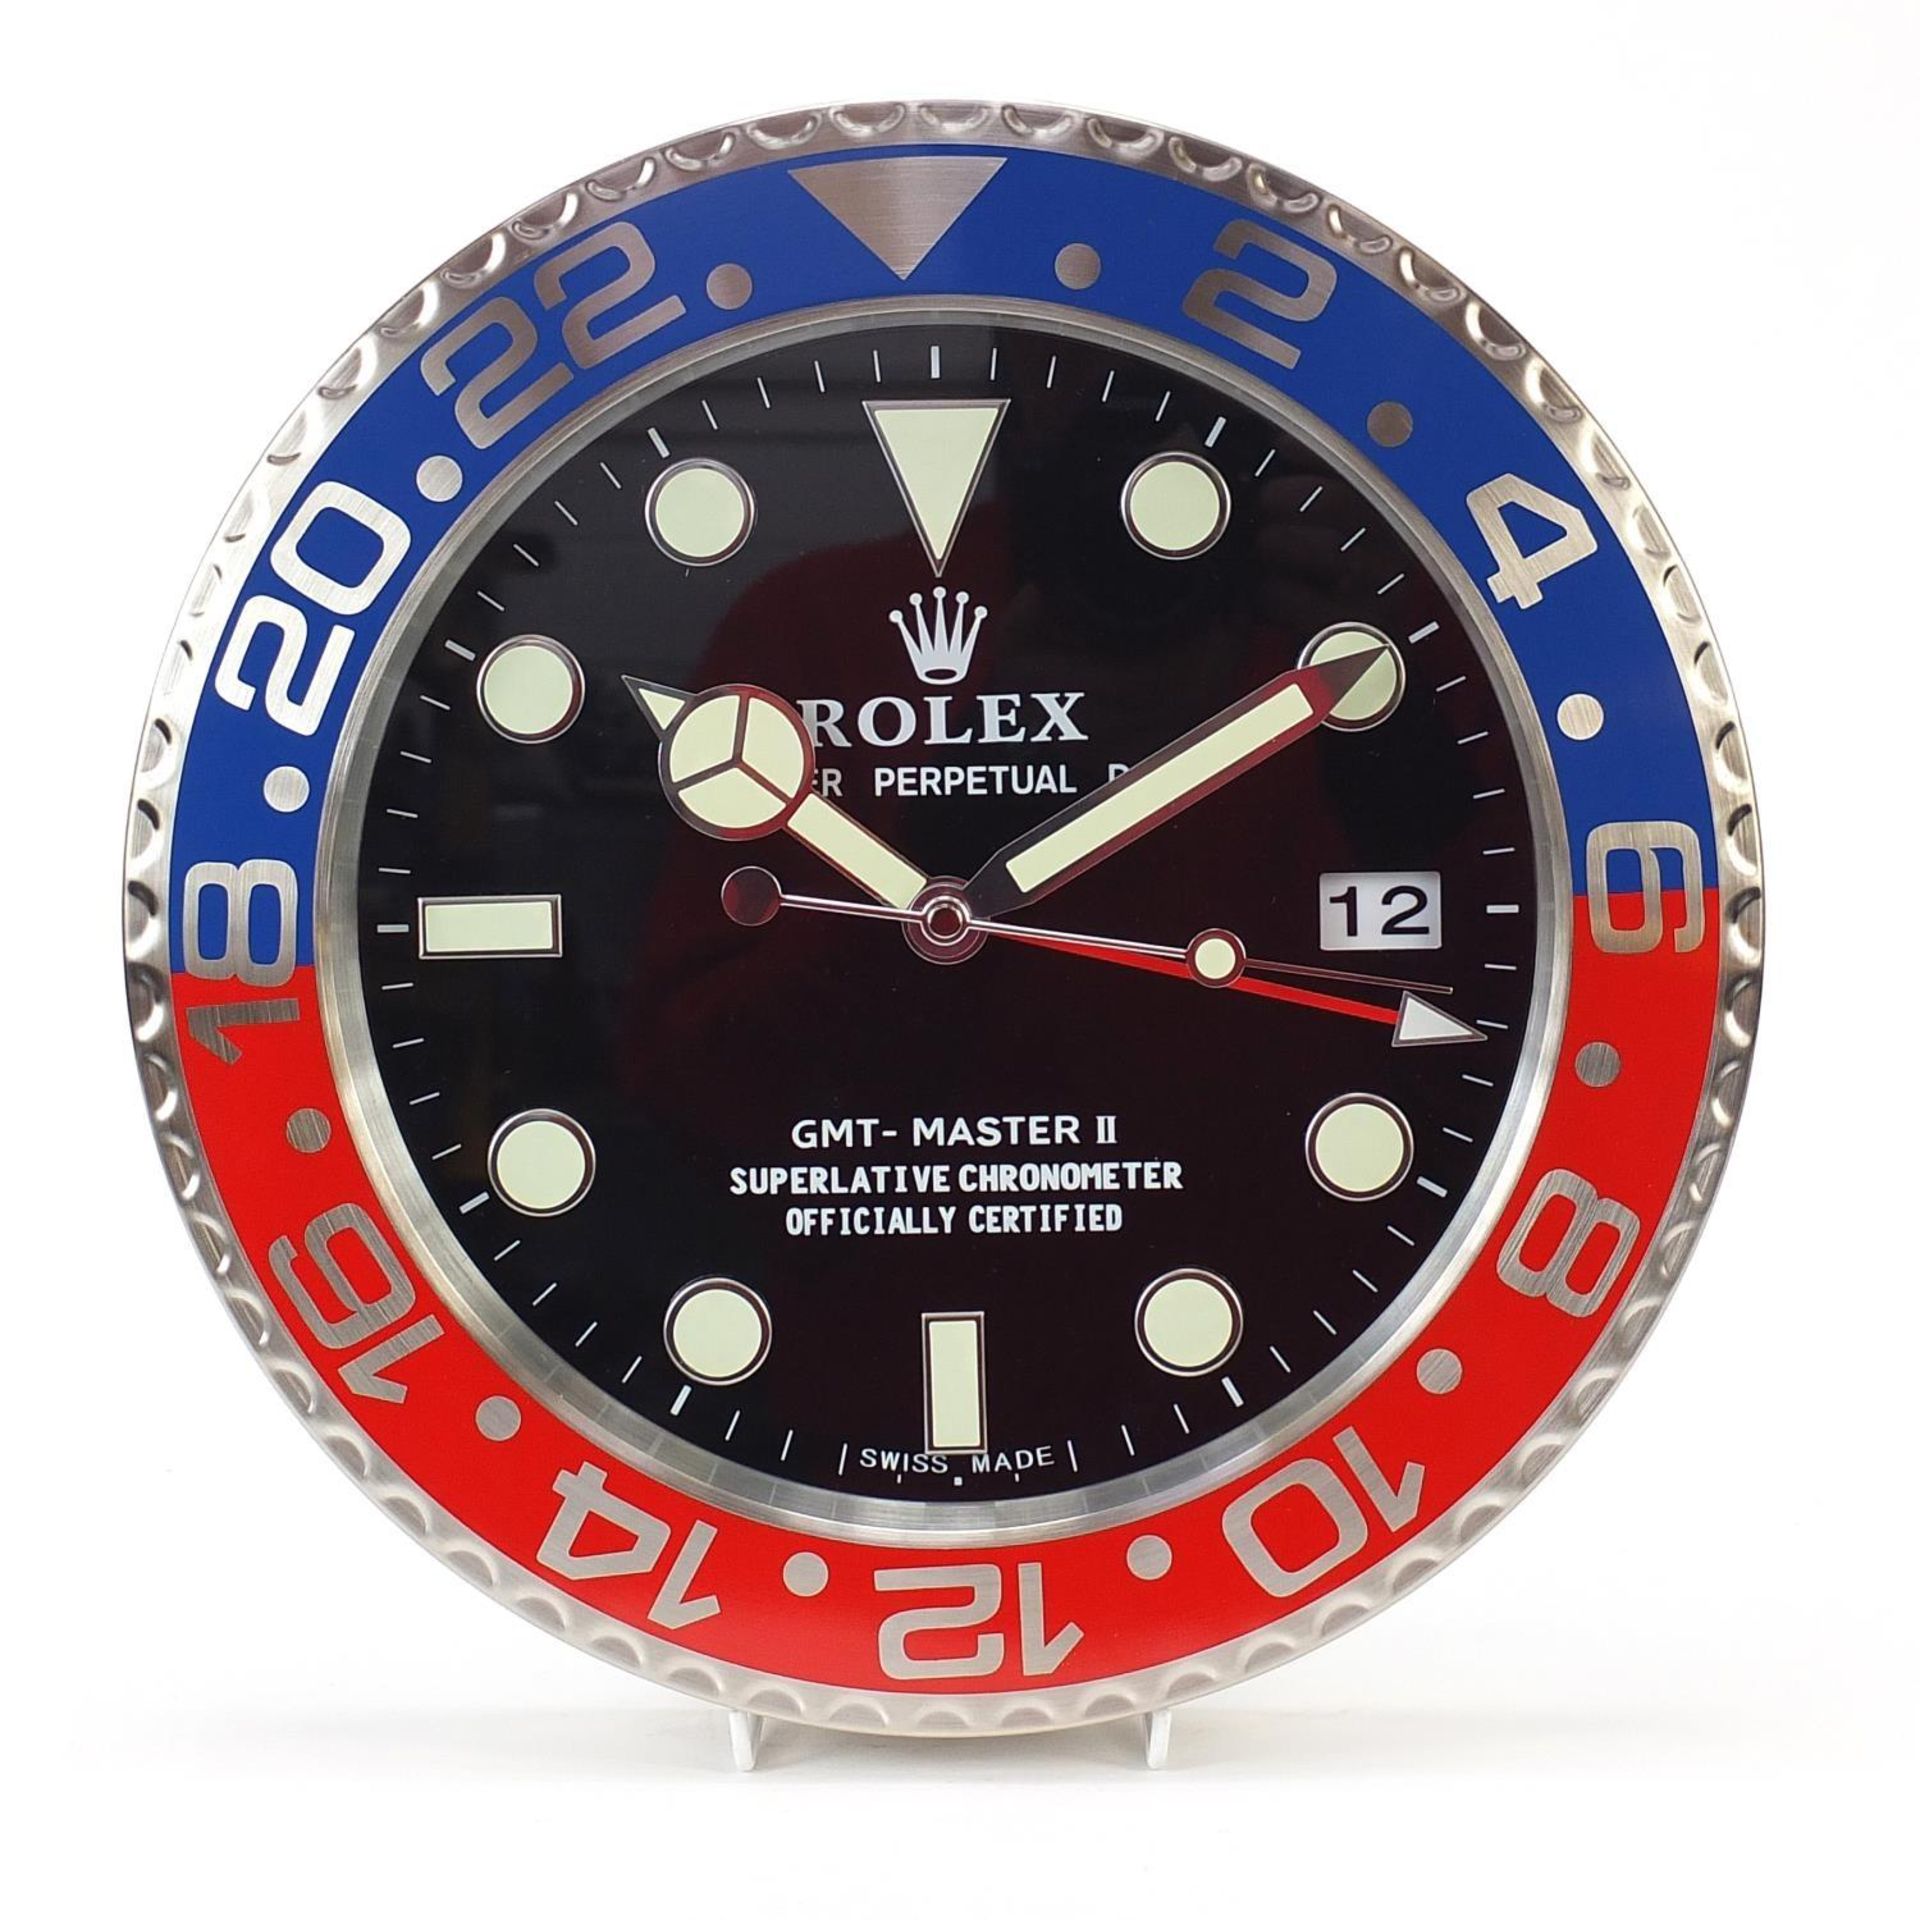 Rolex GMT Master II dealer's display design wall clock, 33.5cm in diameter